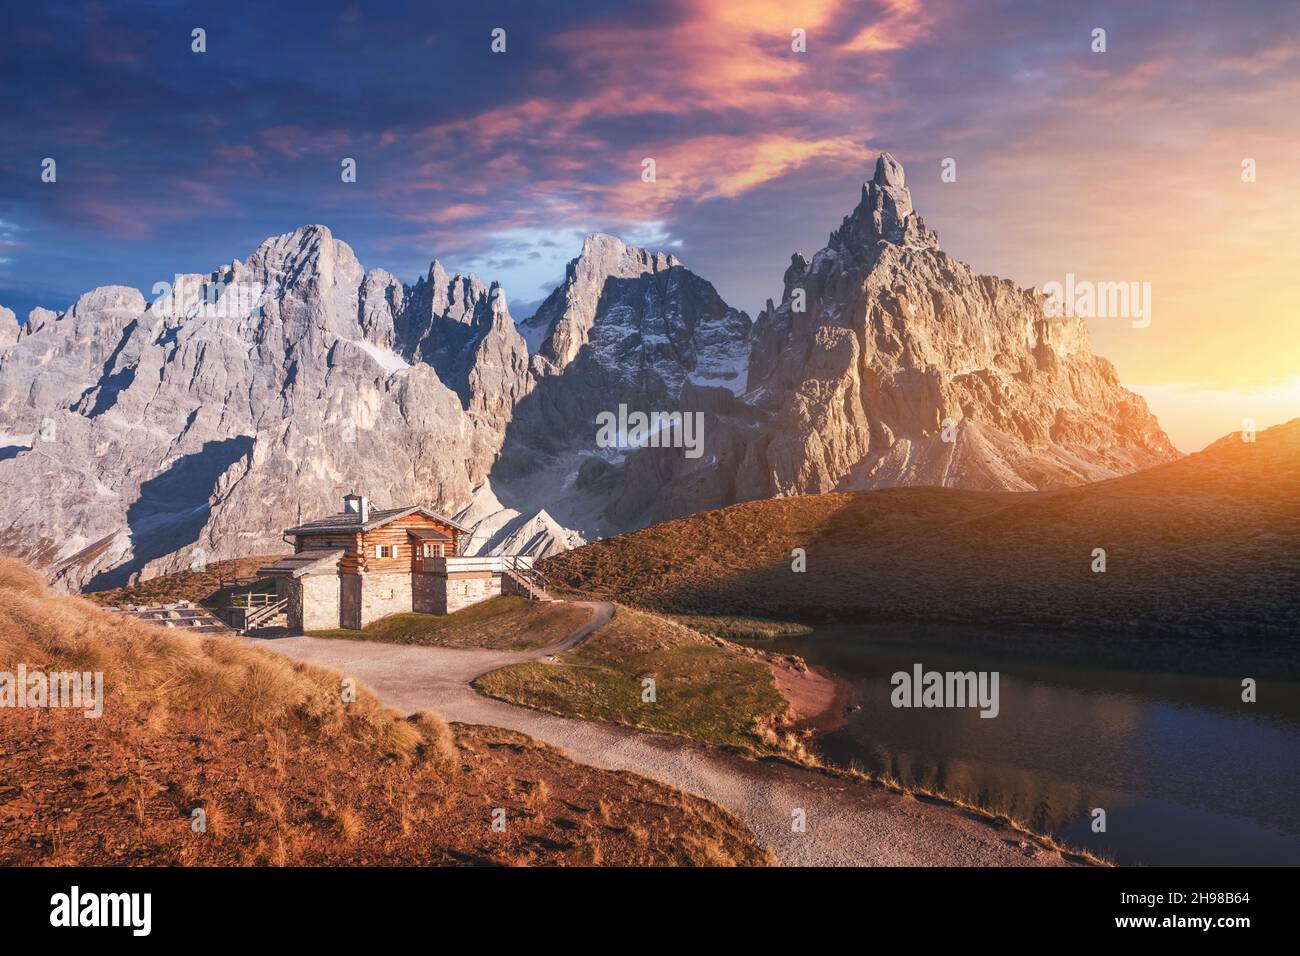 Unglaubliche Landschaft mit einer Reflexion des purpurnen Himmels und der Berge in einem Wasser des kleinen Sees in einem beliebten Touristenziel - Baita Segantini Berghütte. Rollepass, Dolomiten Alpen, Italien Stockfoto